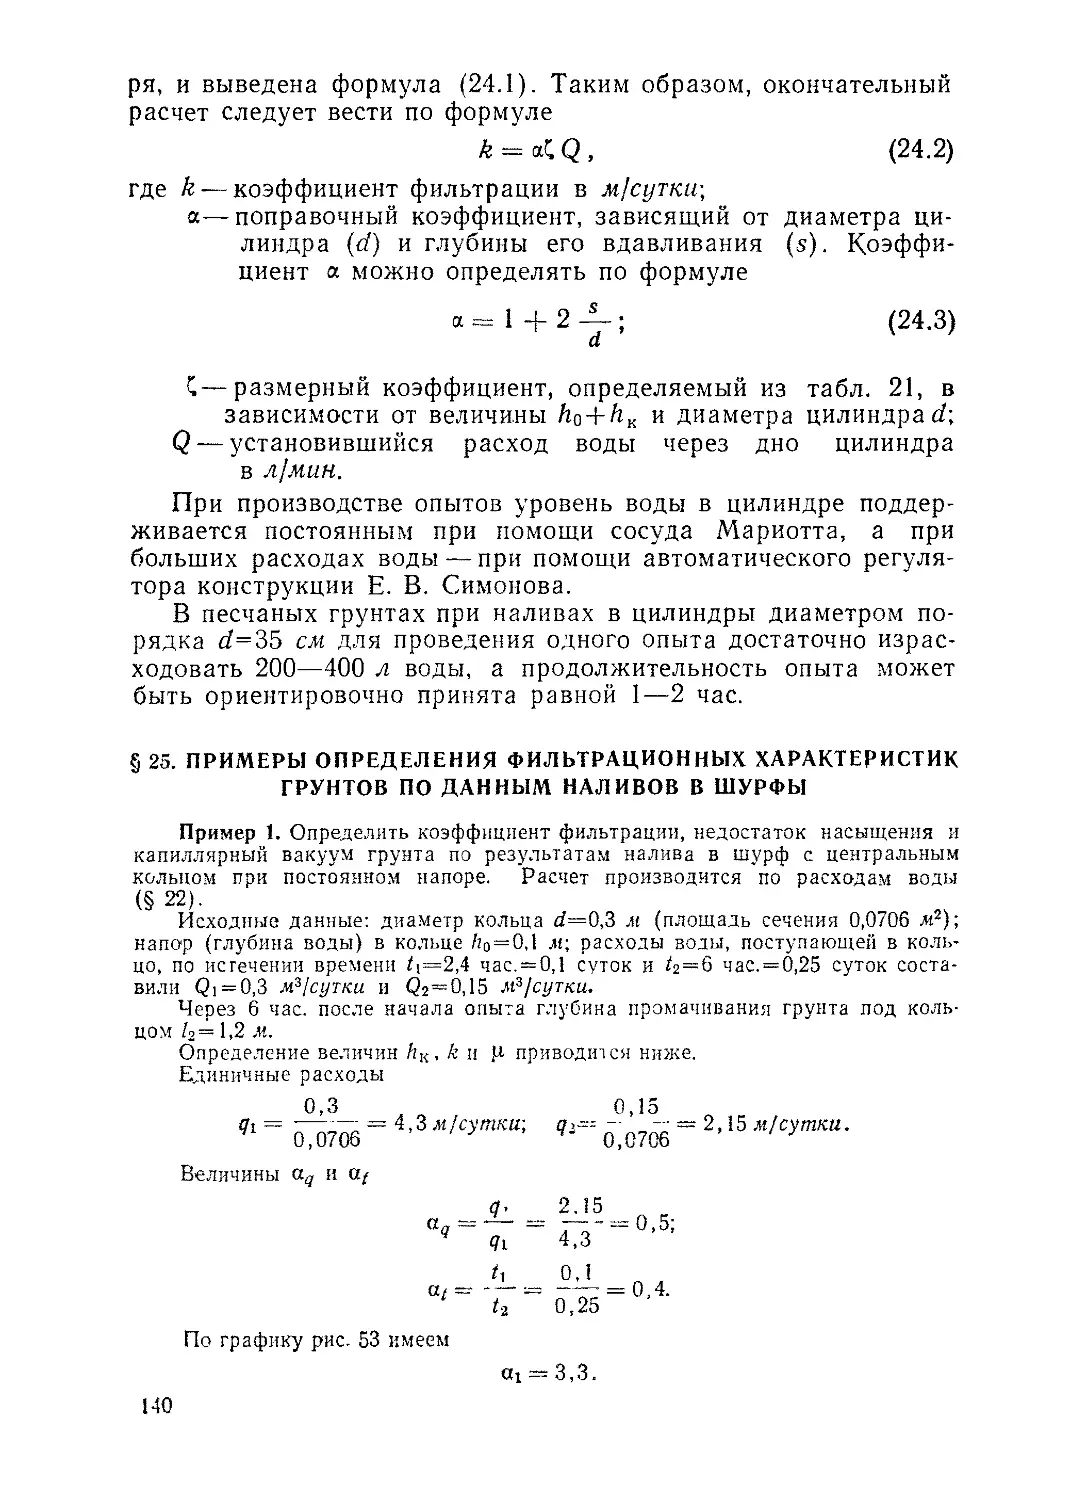 § 25. Примеры определения фильтрационных характеристик грунтов по данным наливов в шурфы, 140